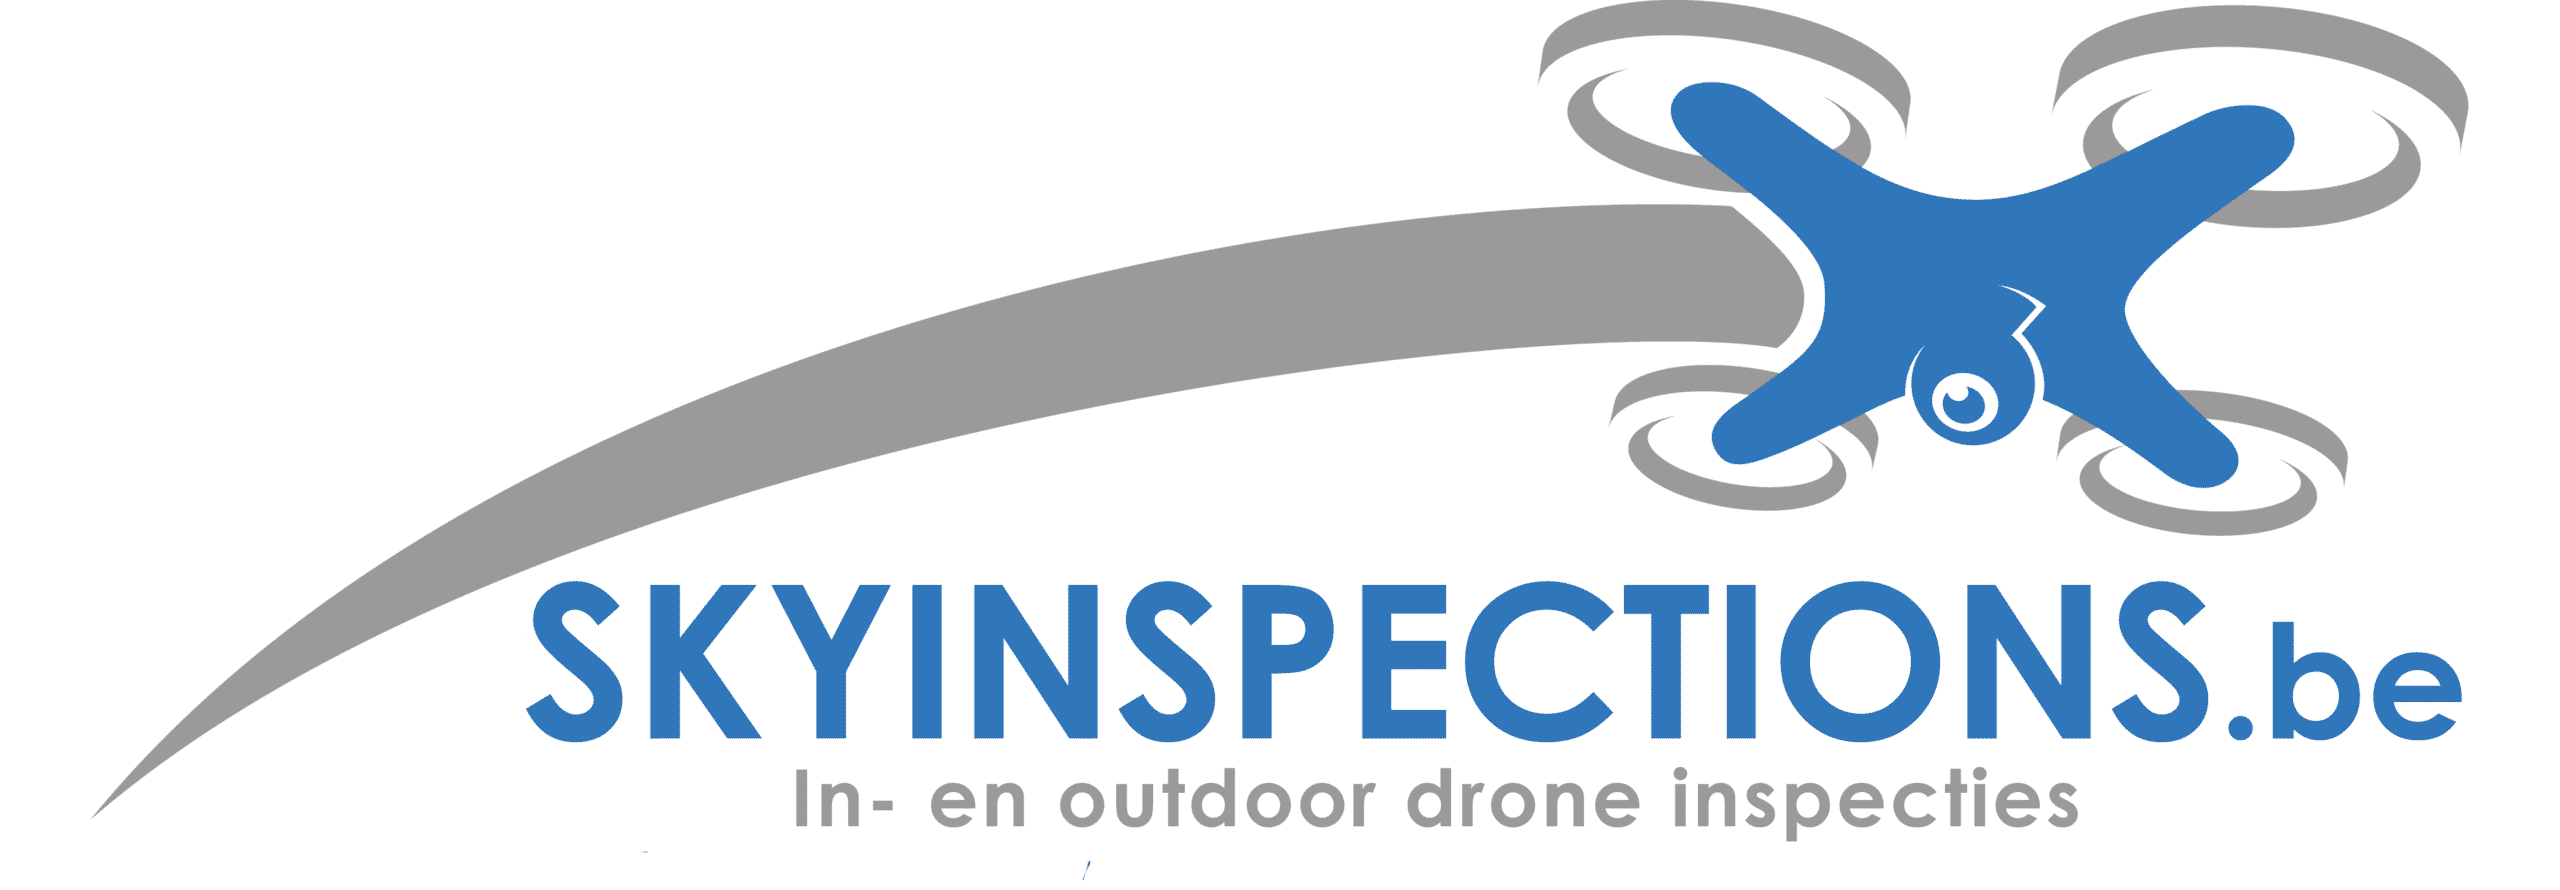 Skyinspections.be - In- en outdoor drone inspecties